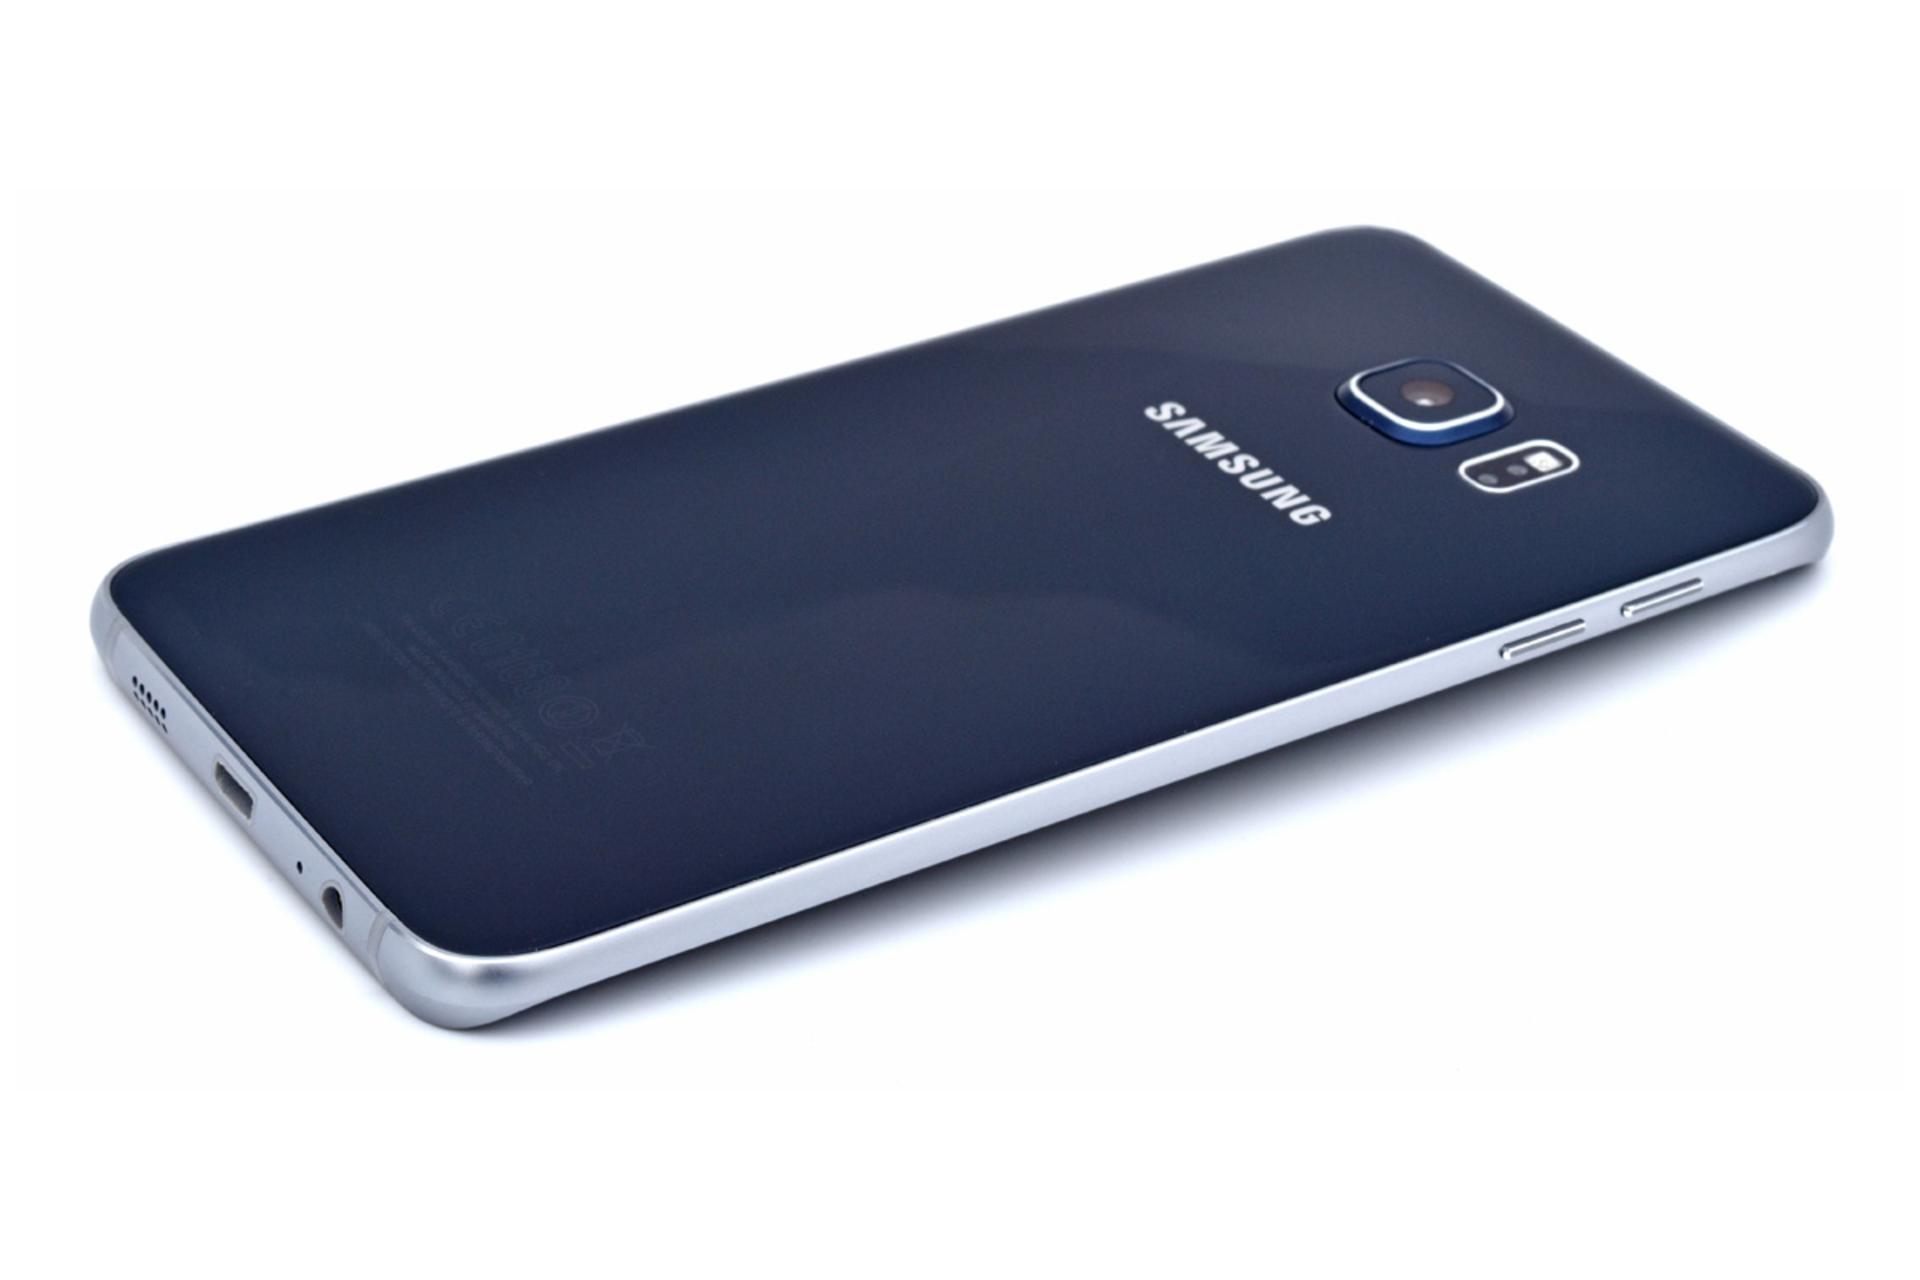 دوربین گلکسی اس 6 اج پلاس سامسونگ Samsung Galaxy S6 edge+